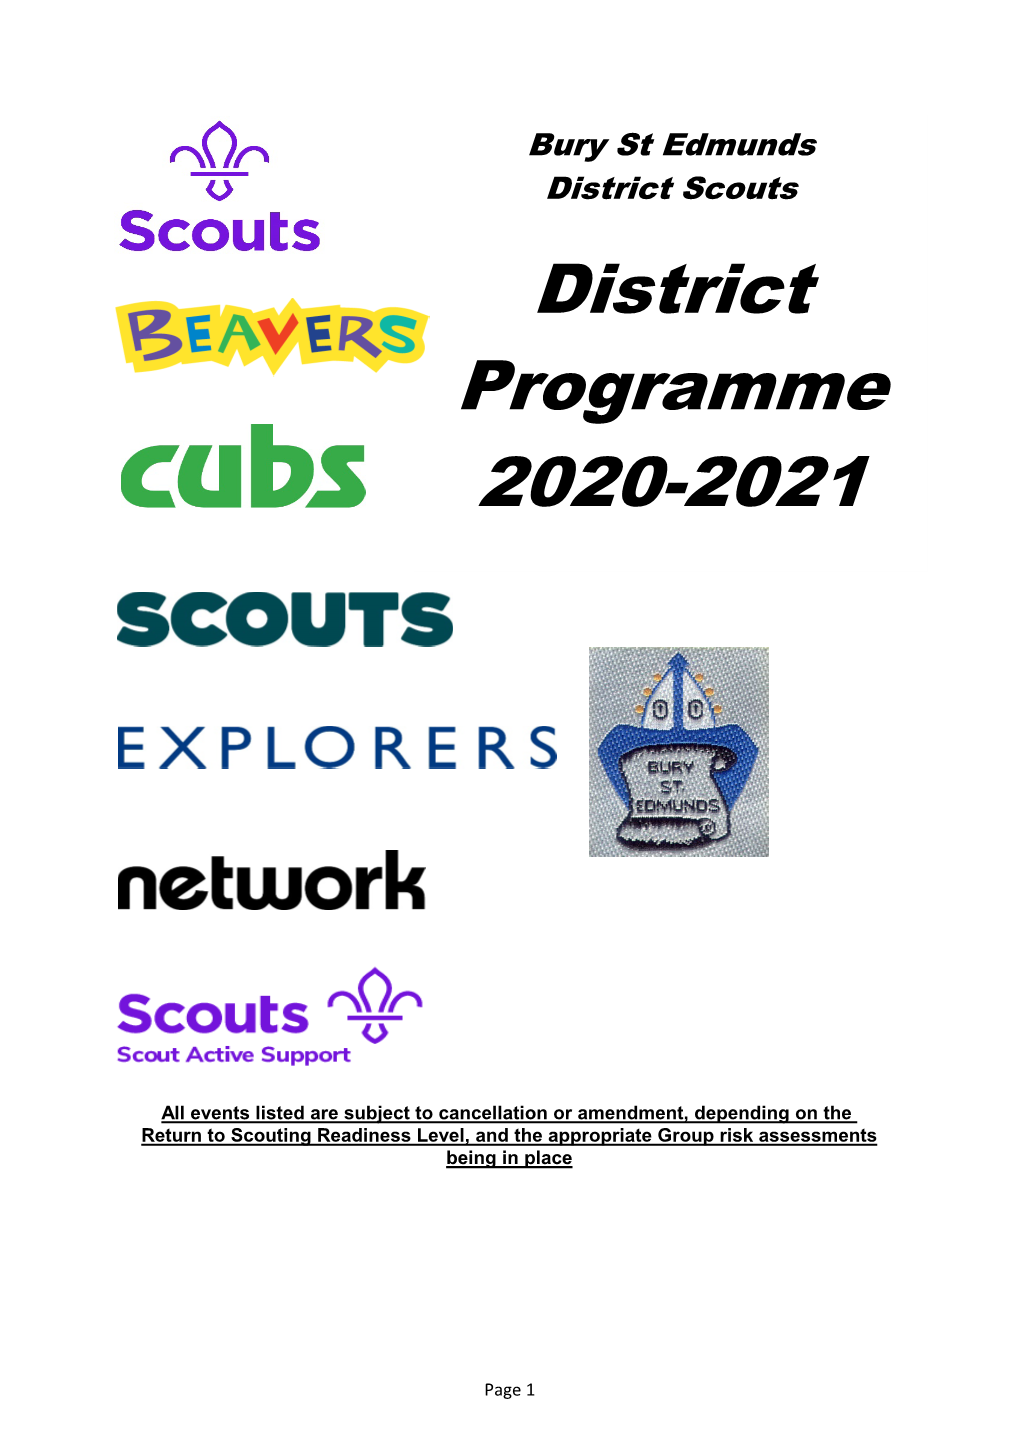 District Programme 2020-2021